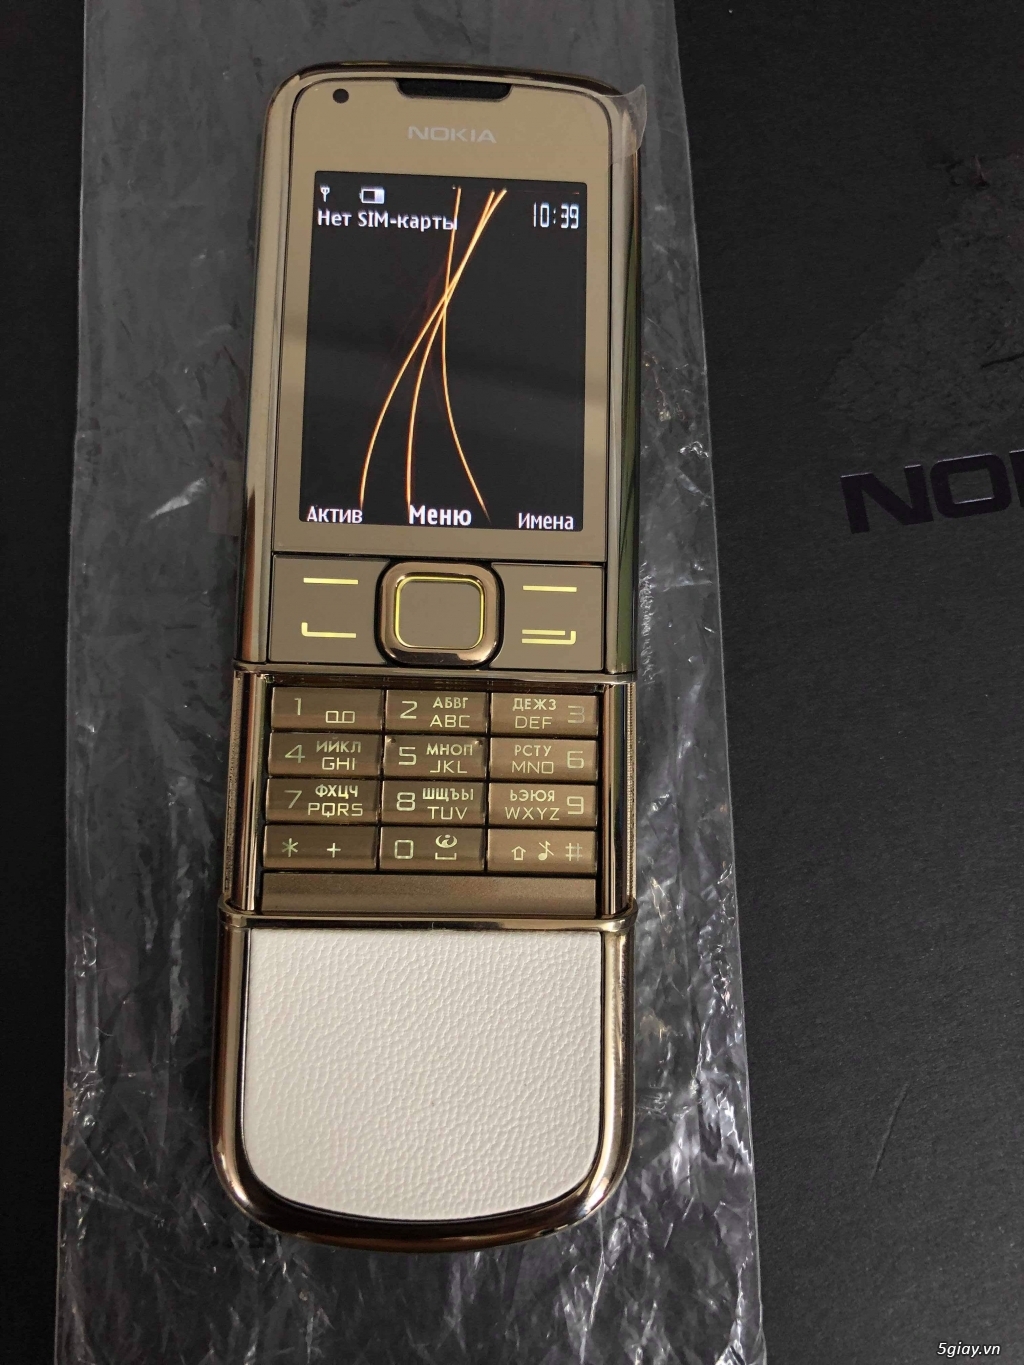 Kinh điển cho BST : Nokia 8800 Gold Arte Brandnew Fullbox xuất Nga PCT